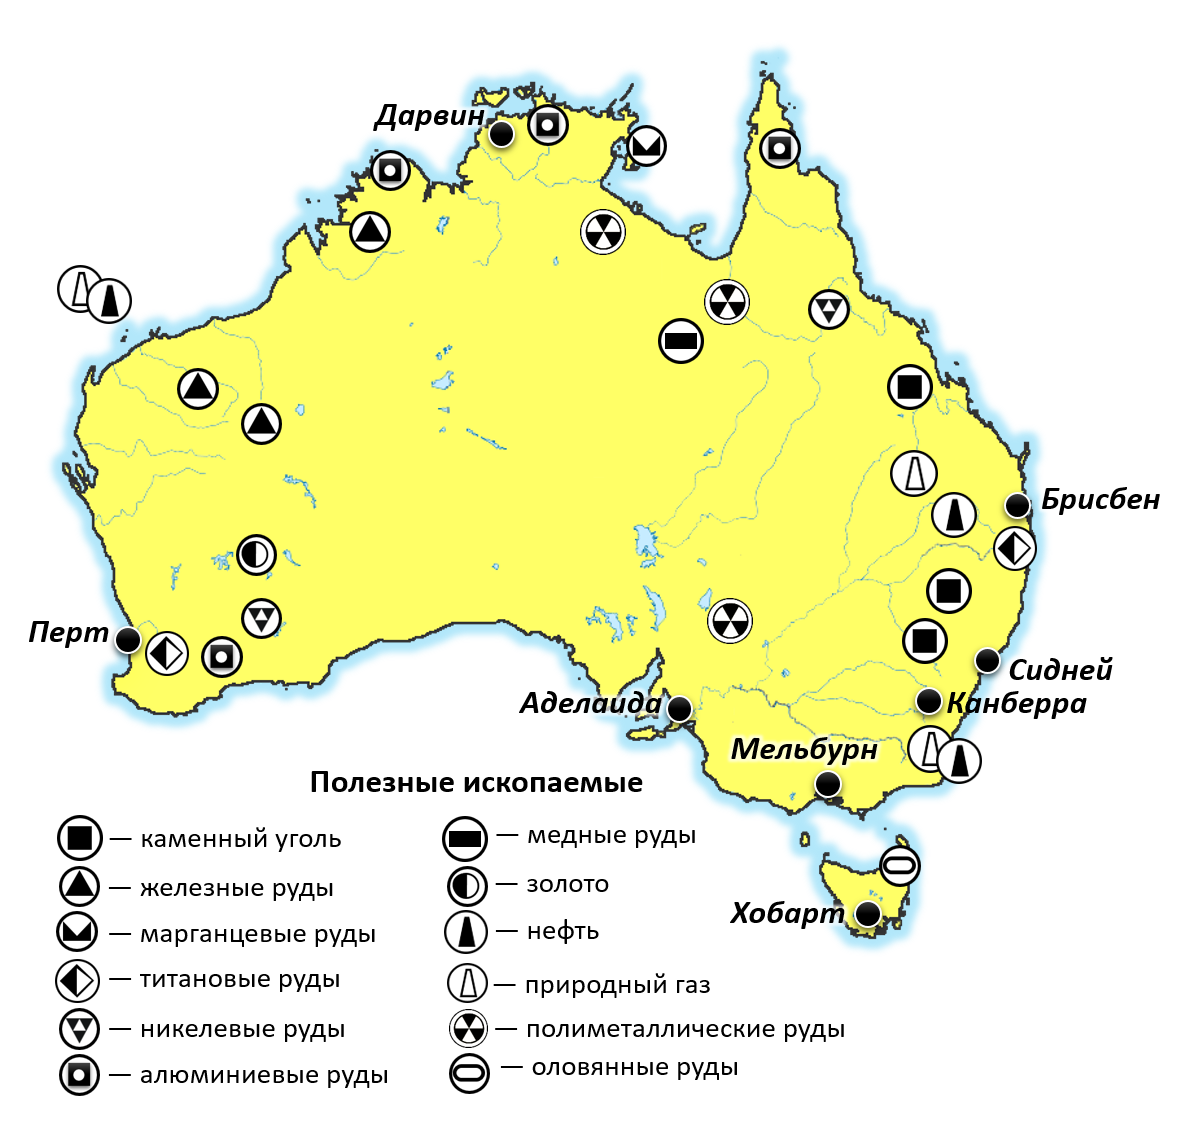 Алюминиевые руды австралии. Месторождения полезных ископаемых в Австралии на карте. Месторождения полезных ископаемых Австралии на контурной карте. Полезные ископаемые Австралии на карте. Месторождение железной руды в Австралии на карте.